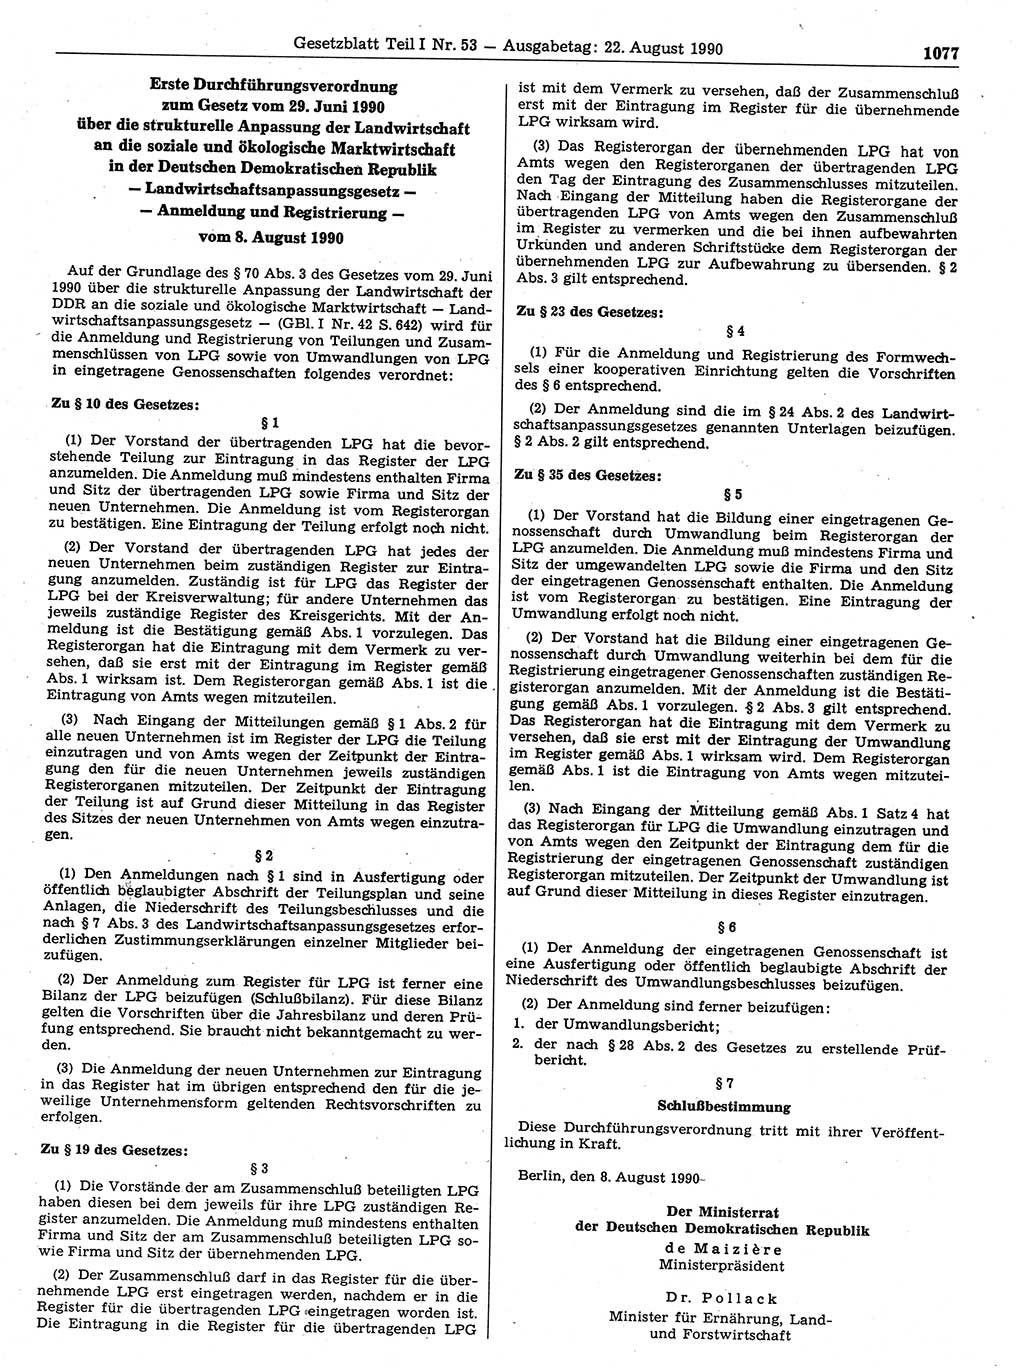 Gesetzblatt (GBl.) der Deutschen Demokratischen Republik (DDR) Teil Ⅰ 1990, Seite 1077 (GBl. DDR Ⅰ 1990, S. 1077)